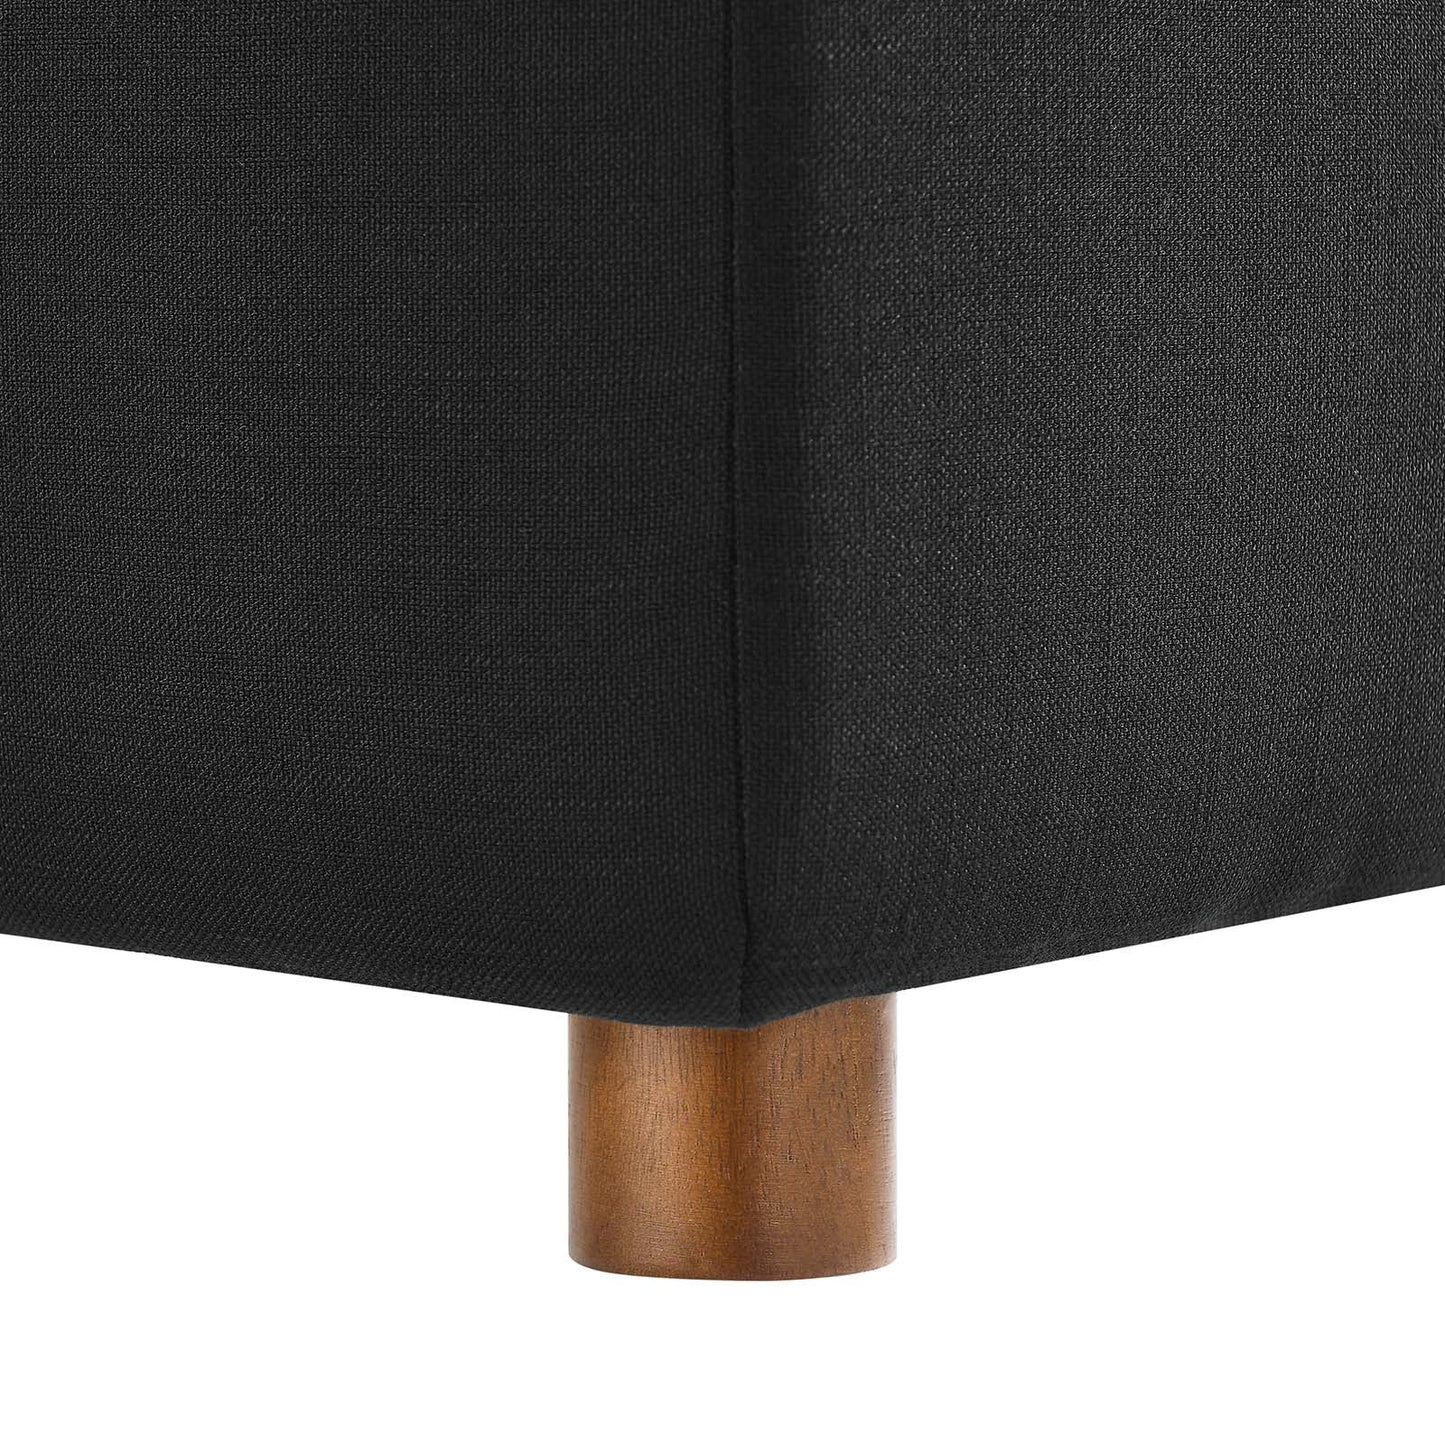 Commix Down Filled Overstuffed 5 Piece Sectional Sofa Set Black EEI-3358-BLK